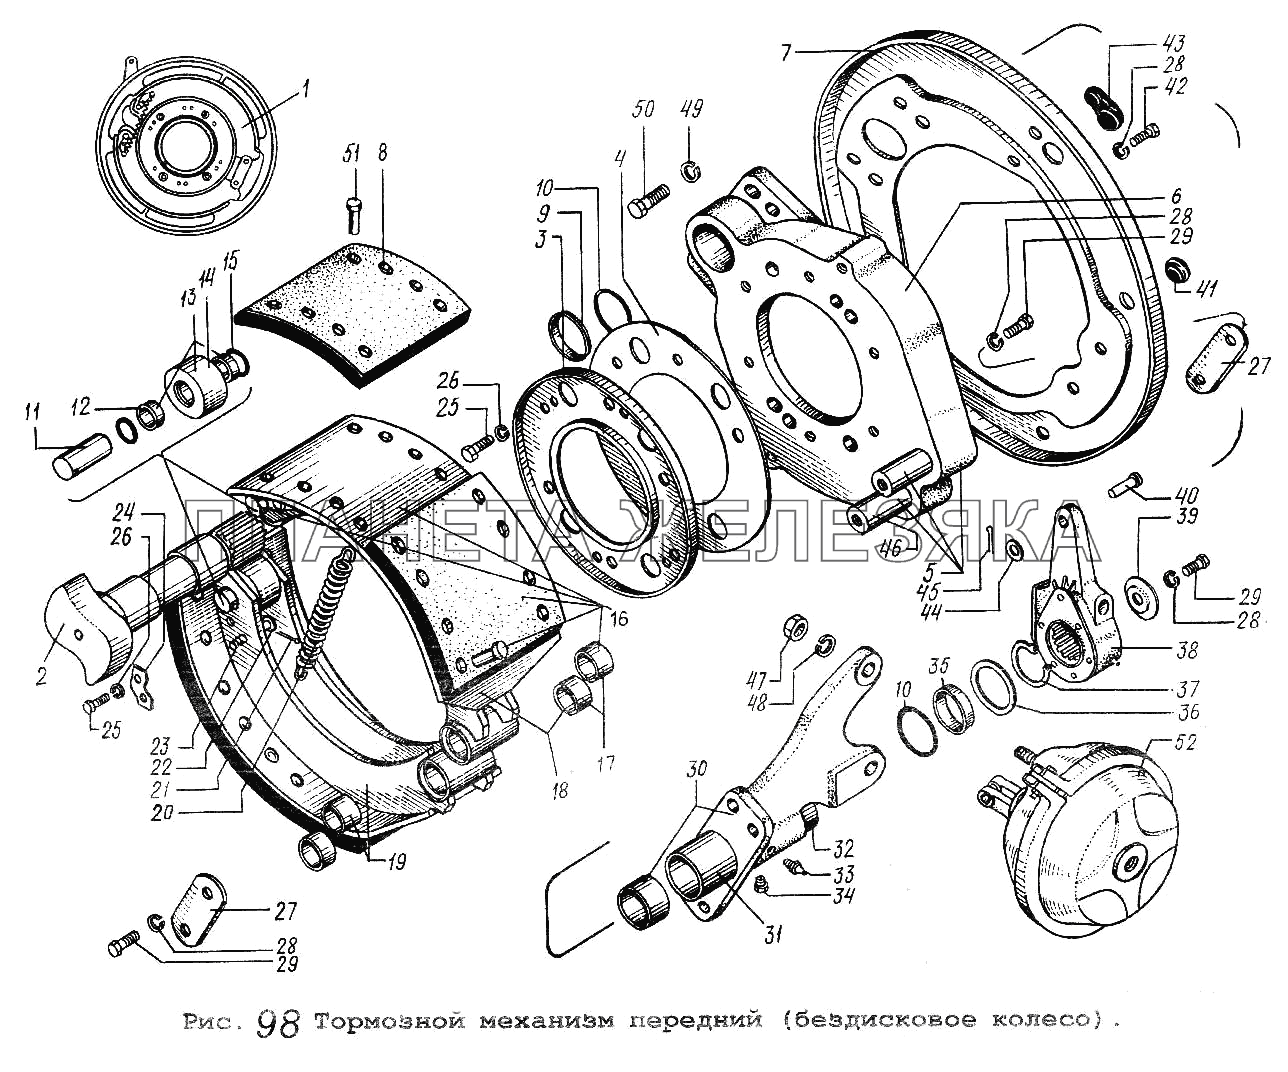 Тормозной механизм передний (бездисковое колесо) МАЗ-64229